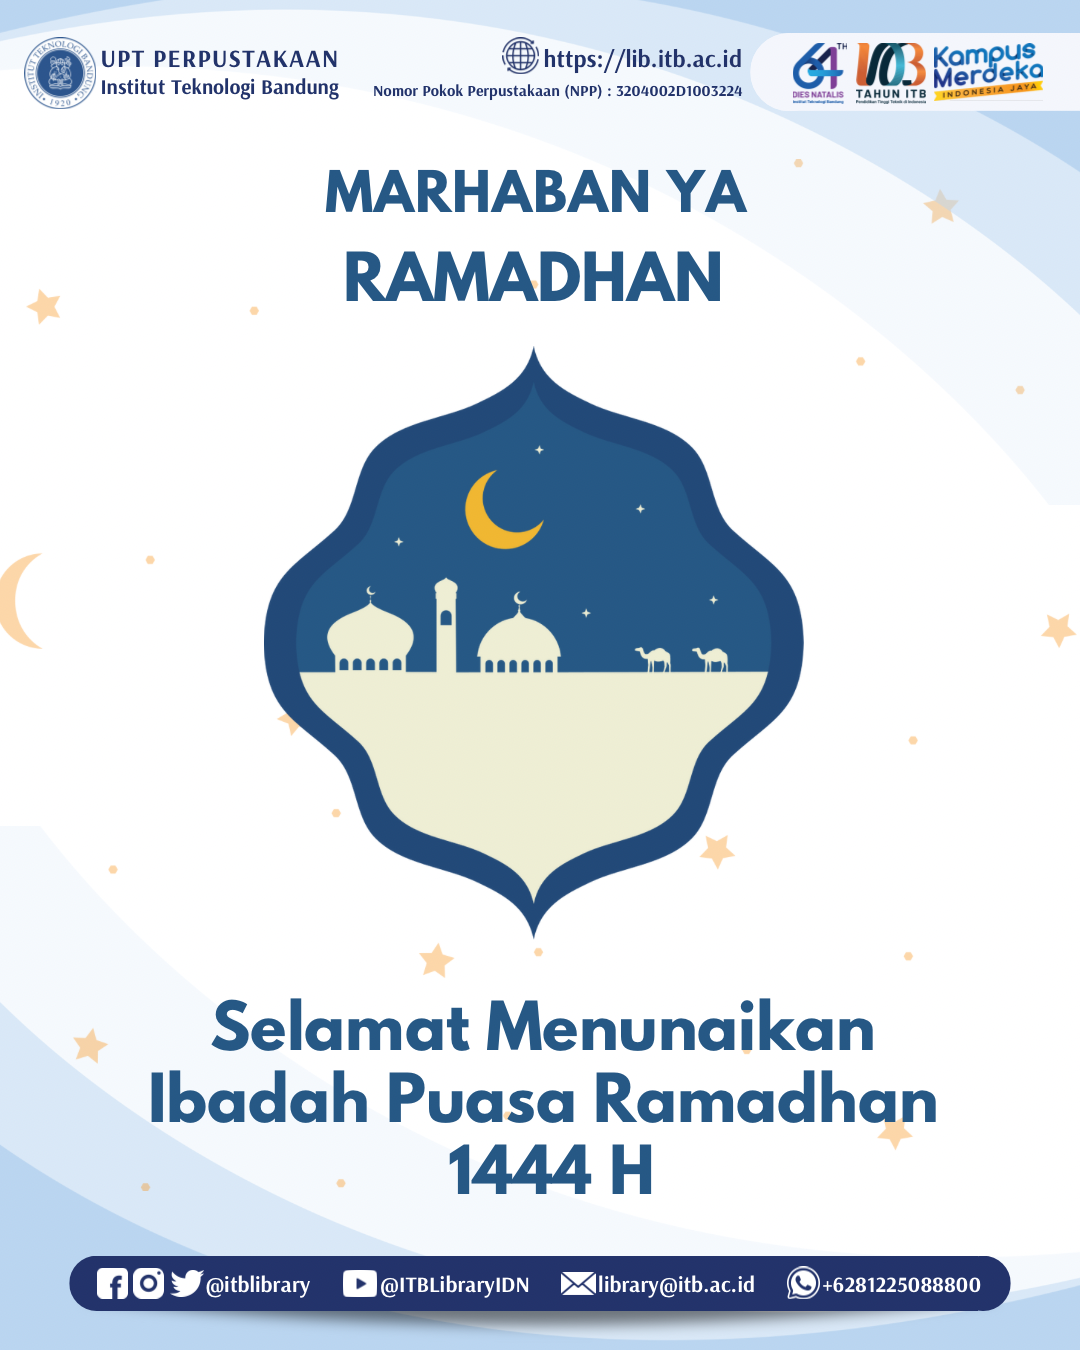 Selamat Menunaikan Ibadah Puasa Bulan Ramadhan 1444 H